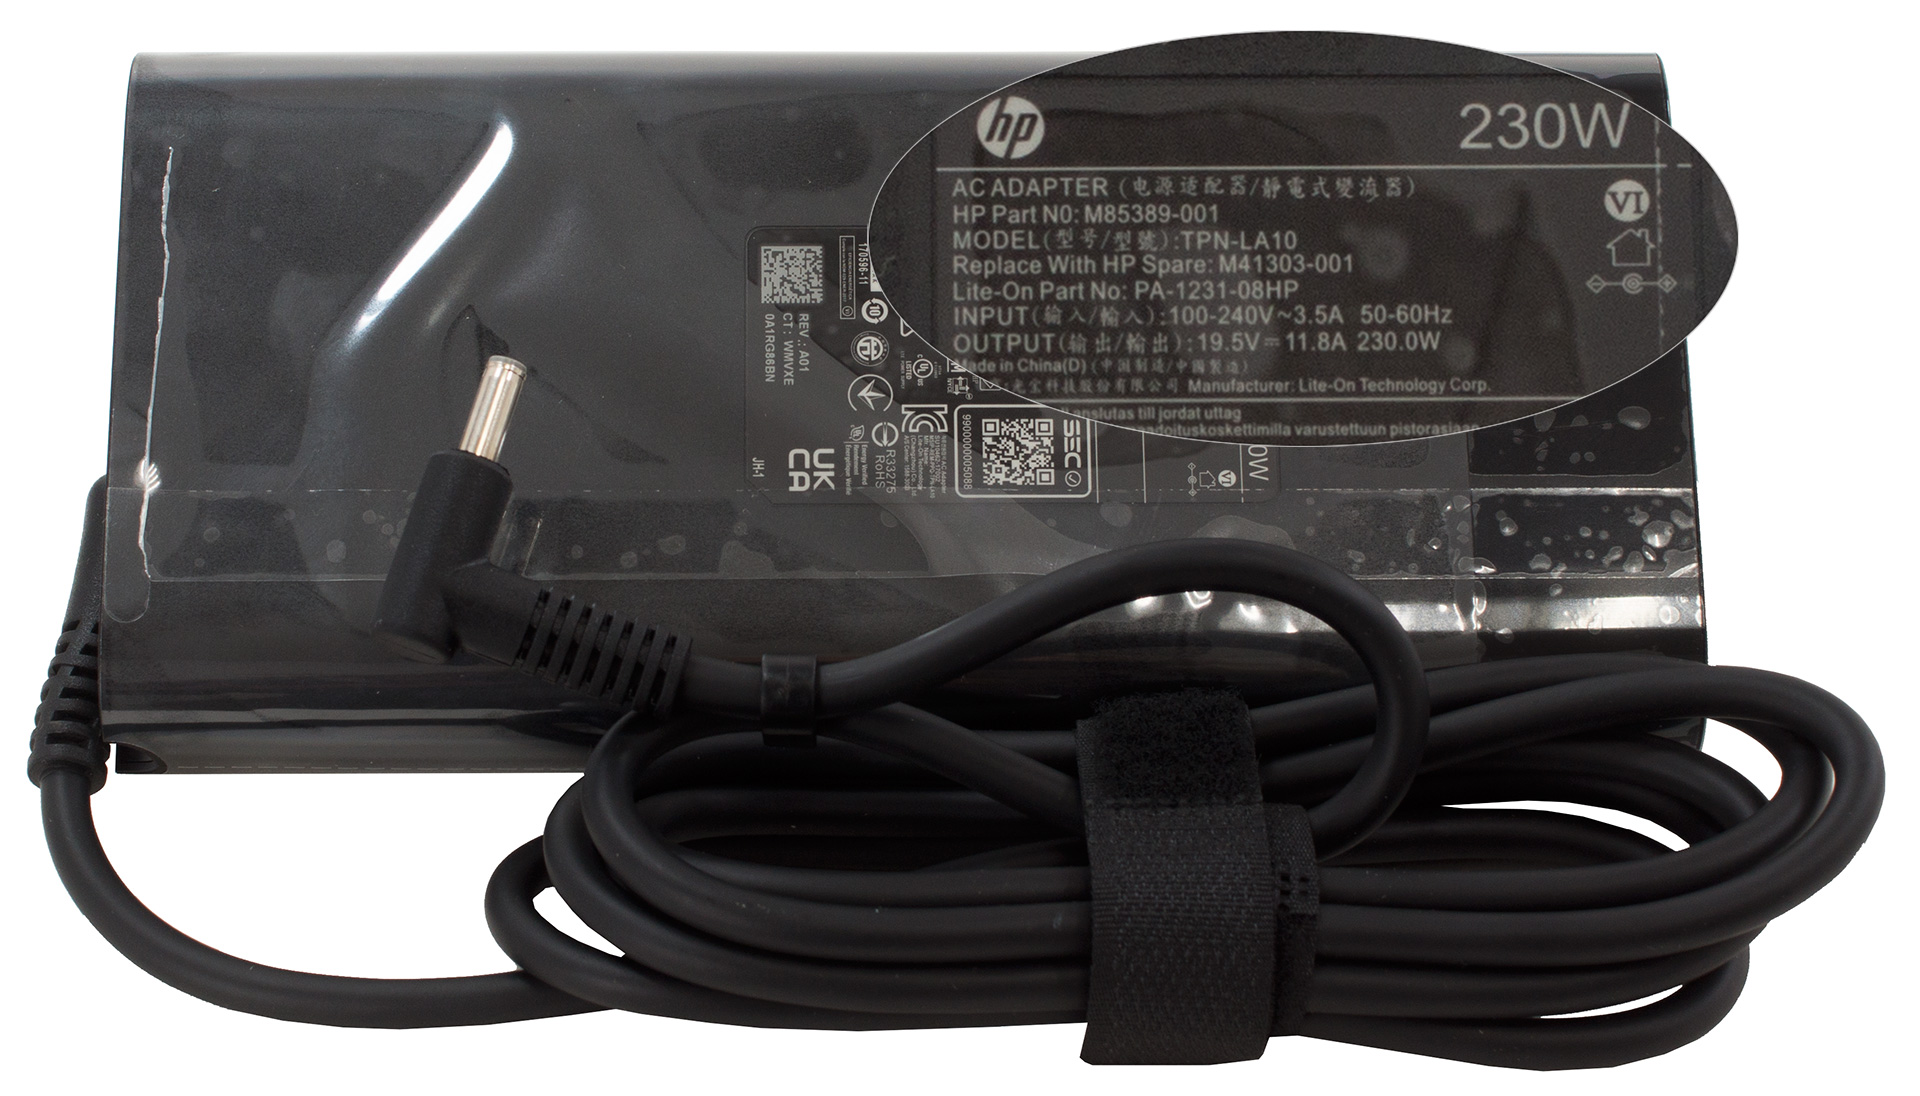 Chargeur d'ordinateur portable Hp 19.5/ 11.8A/ 230W prix pas cher au maroc  sur Access computer